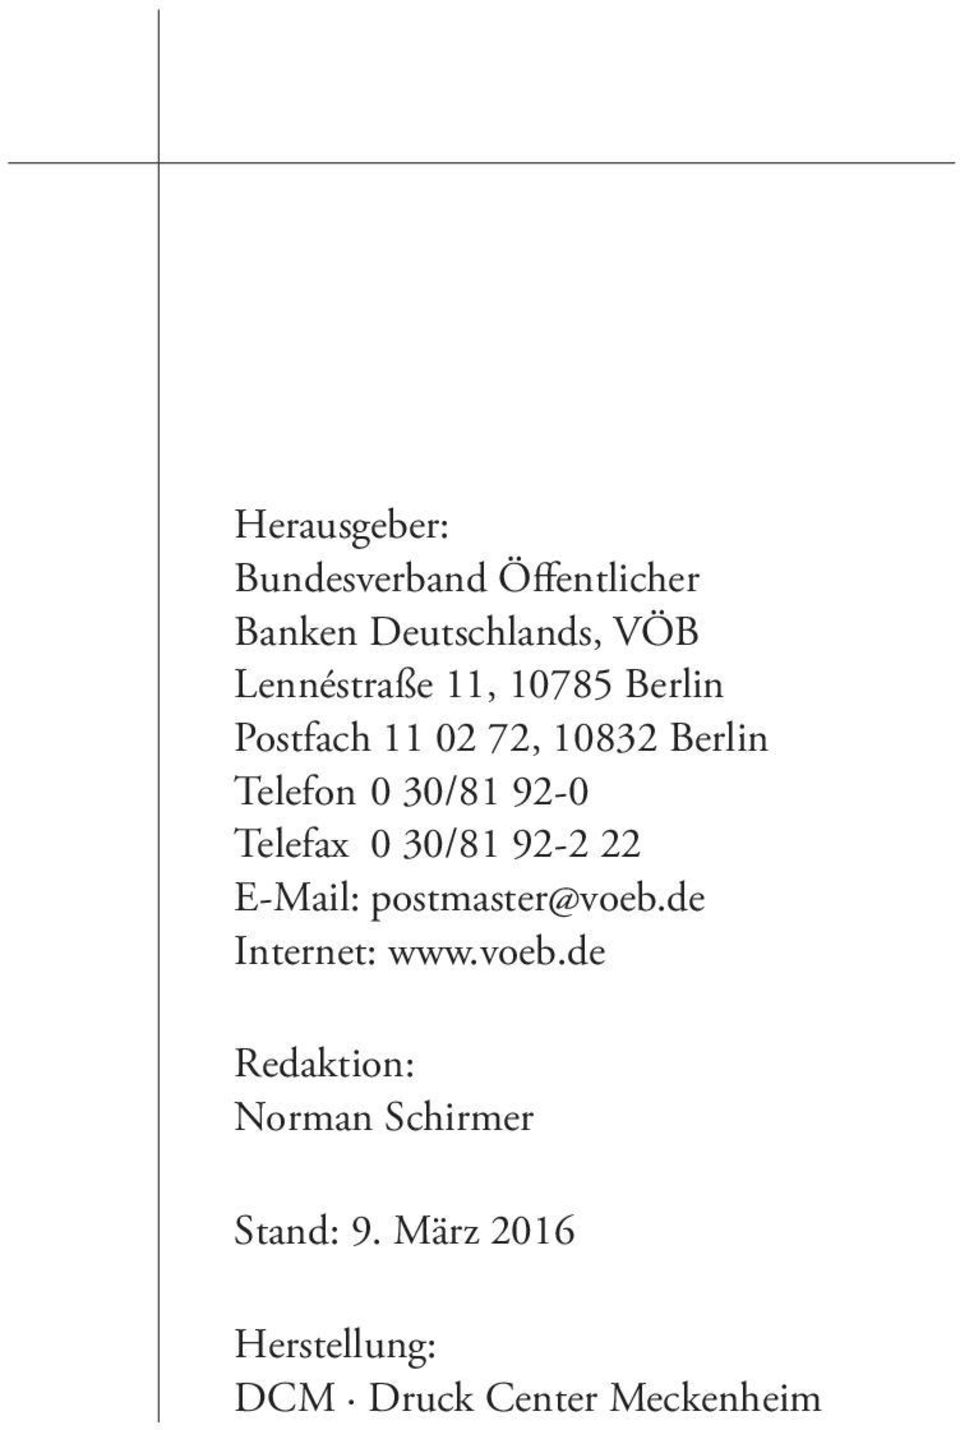 0 30/81 92-2 22 E-Mail: postmaster@voeb.de Internet: www.voeb.de Redaktion: Norman Schirmer Stand: 4.